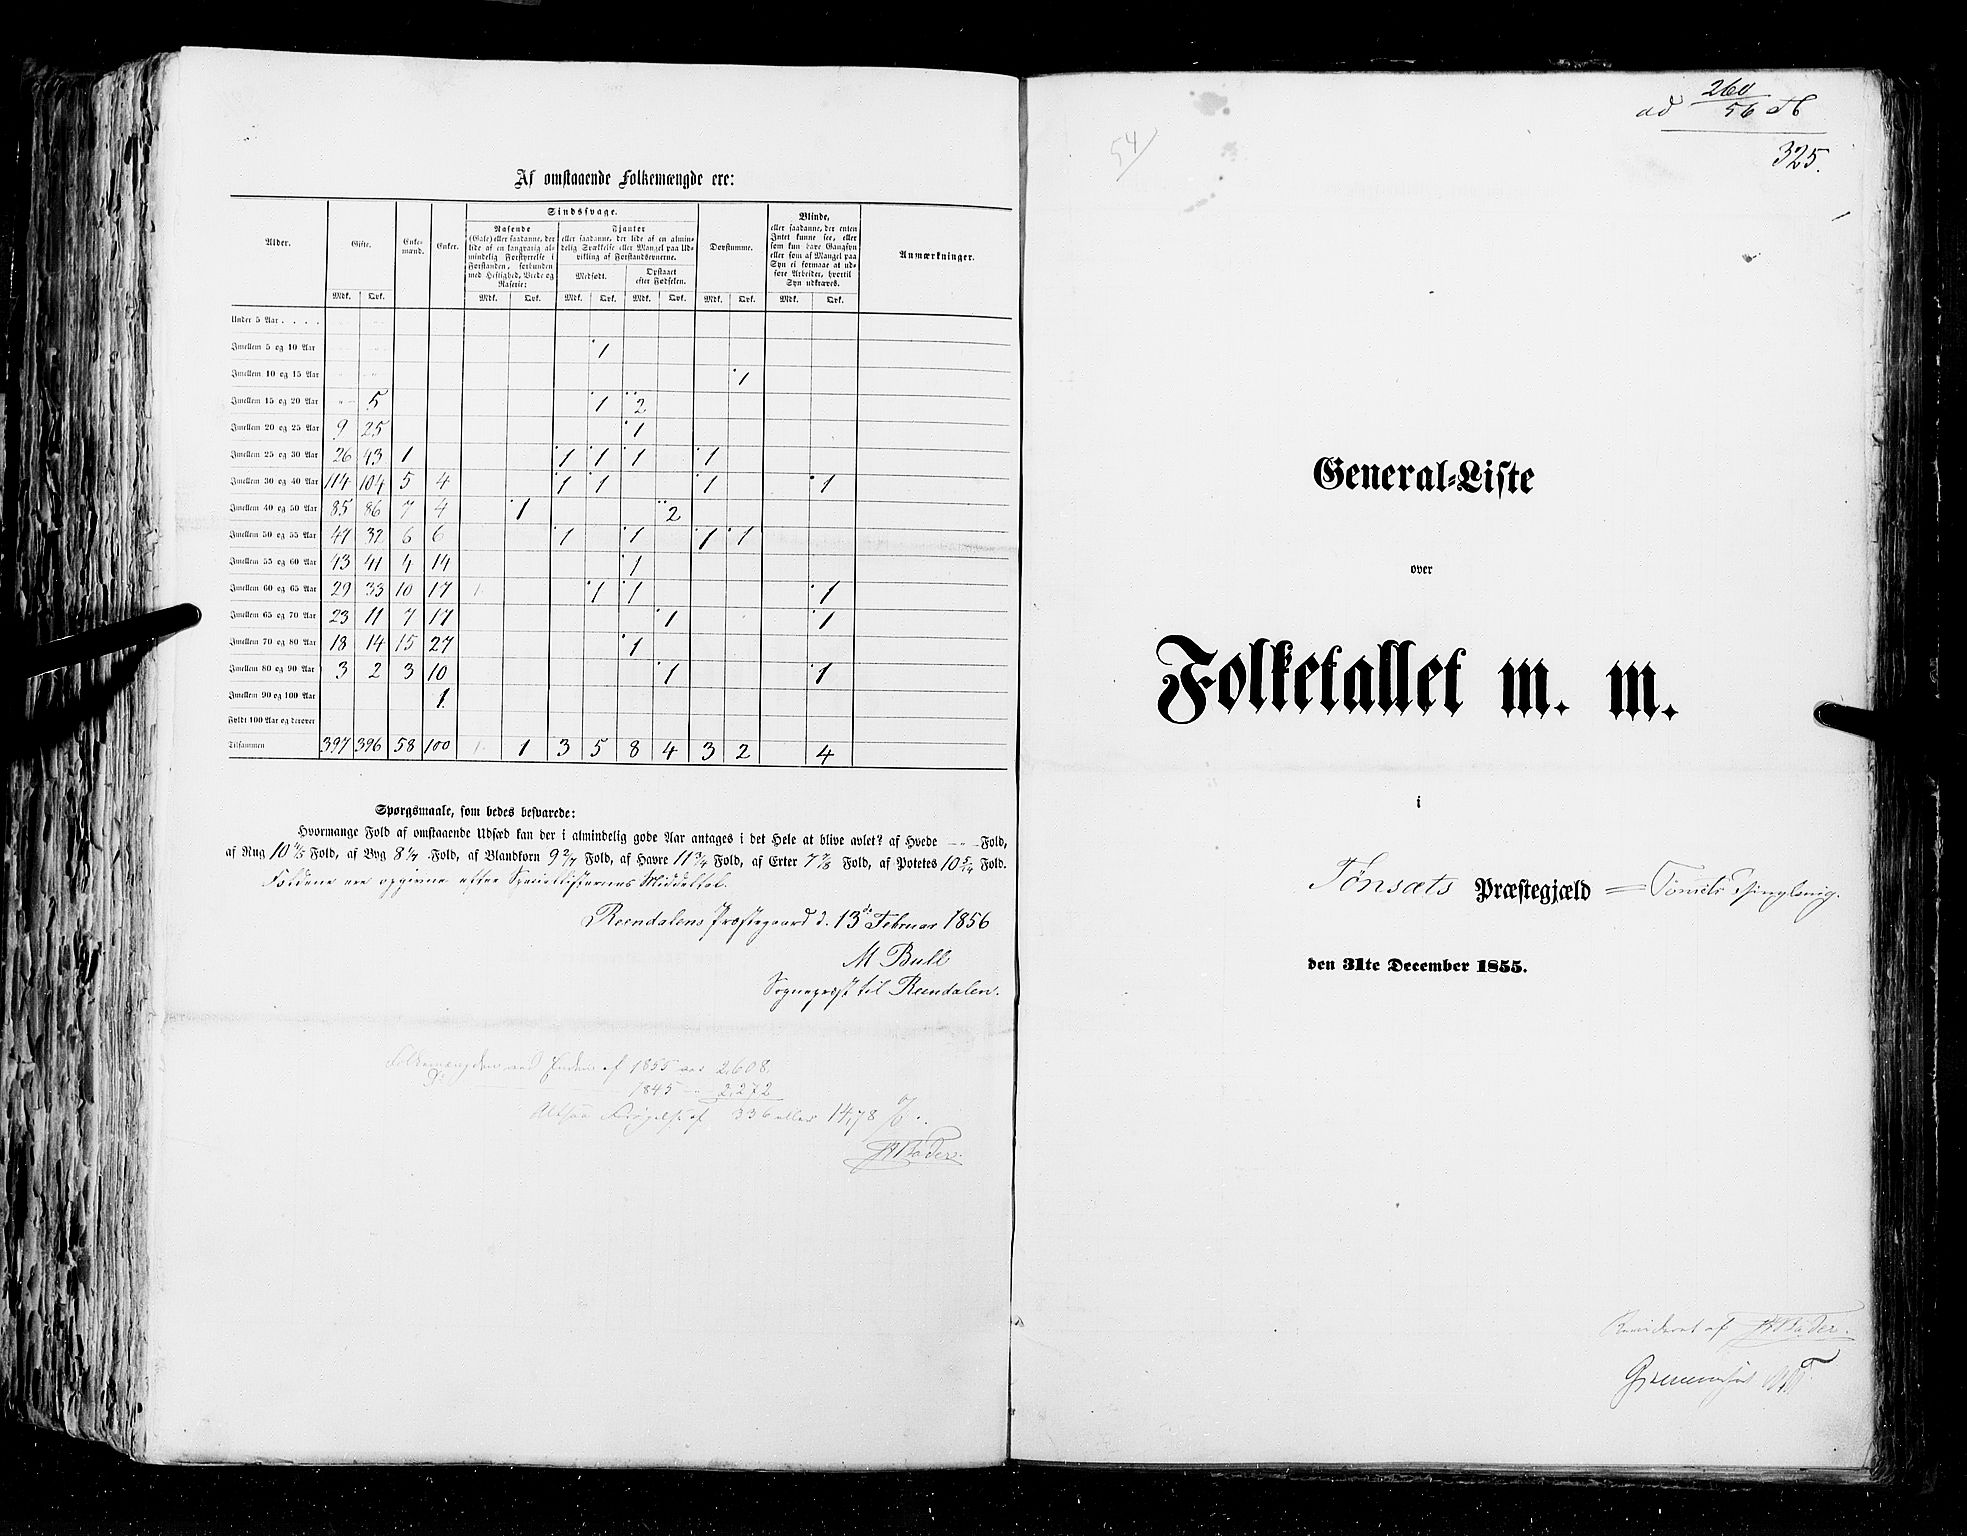 RA, Folketellingen 1855, bind 1: Akershus amt, Smålenenes amt og Hedemarken amt, 1855, s. 325